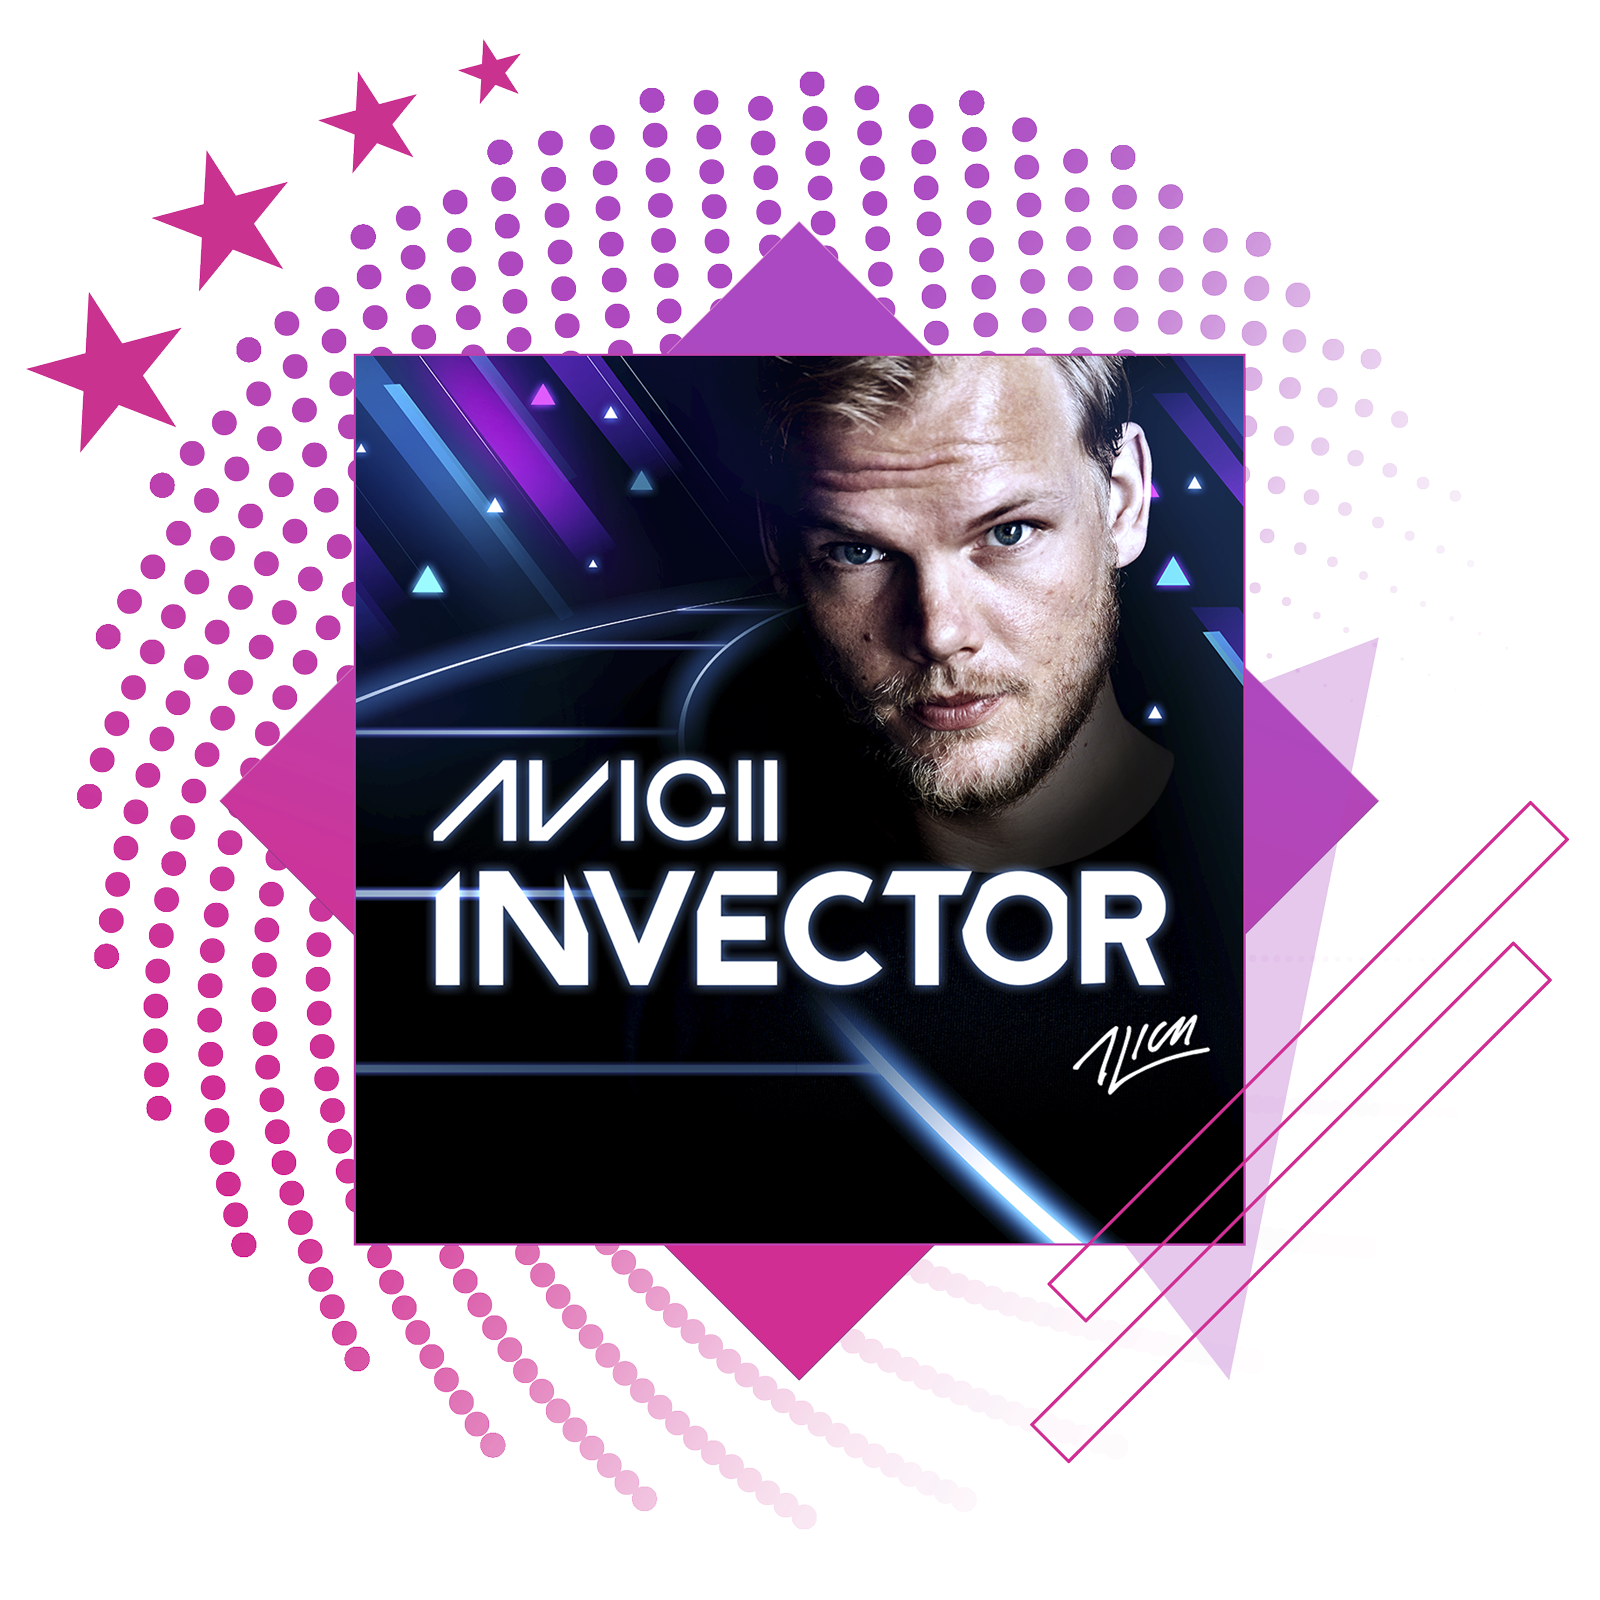 Nejlepší rytmické hry – obrázek s klíčovou grafikou ze hry Aviici: Invector